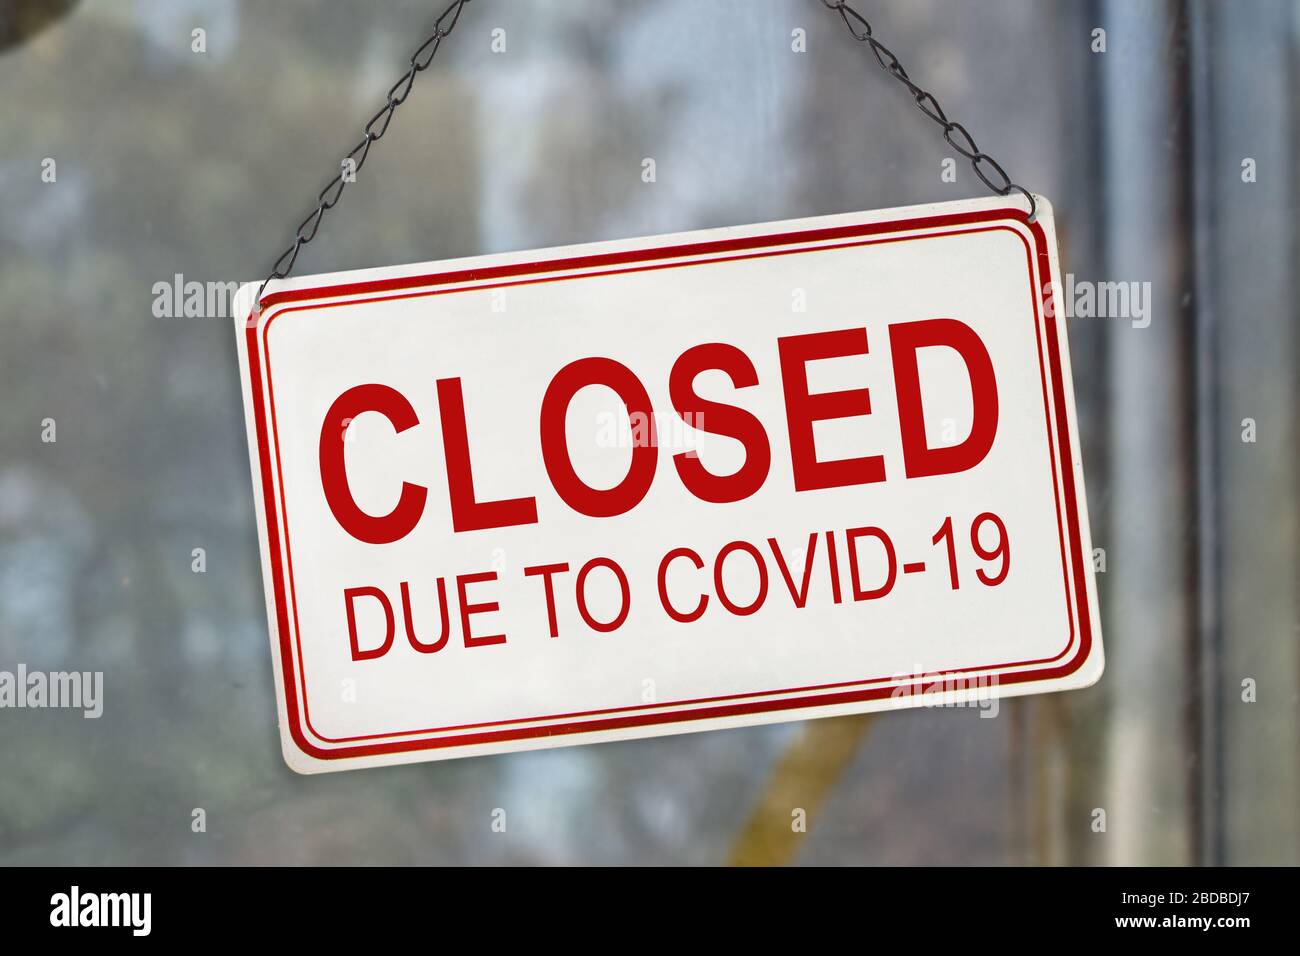 Panneau fermé en raison de Covid-19, verrouillage de l'éclosion de coronavirus, sur la fenêtre d'un magasin. Concept de crise économique Banque D'Images